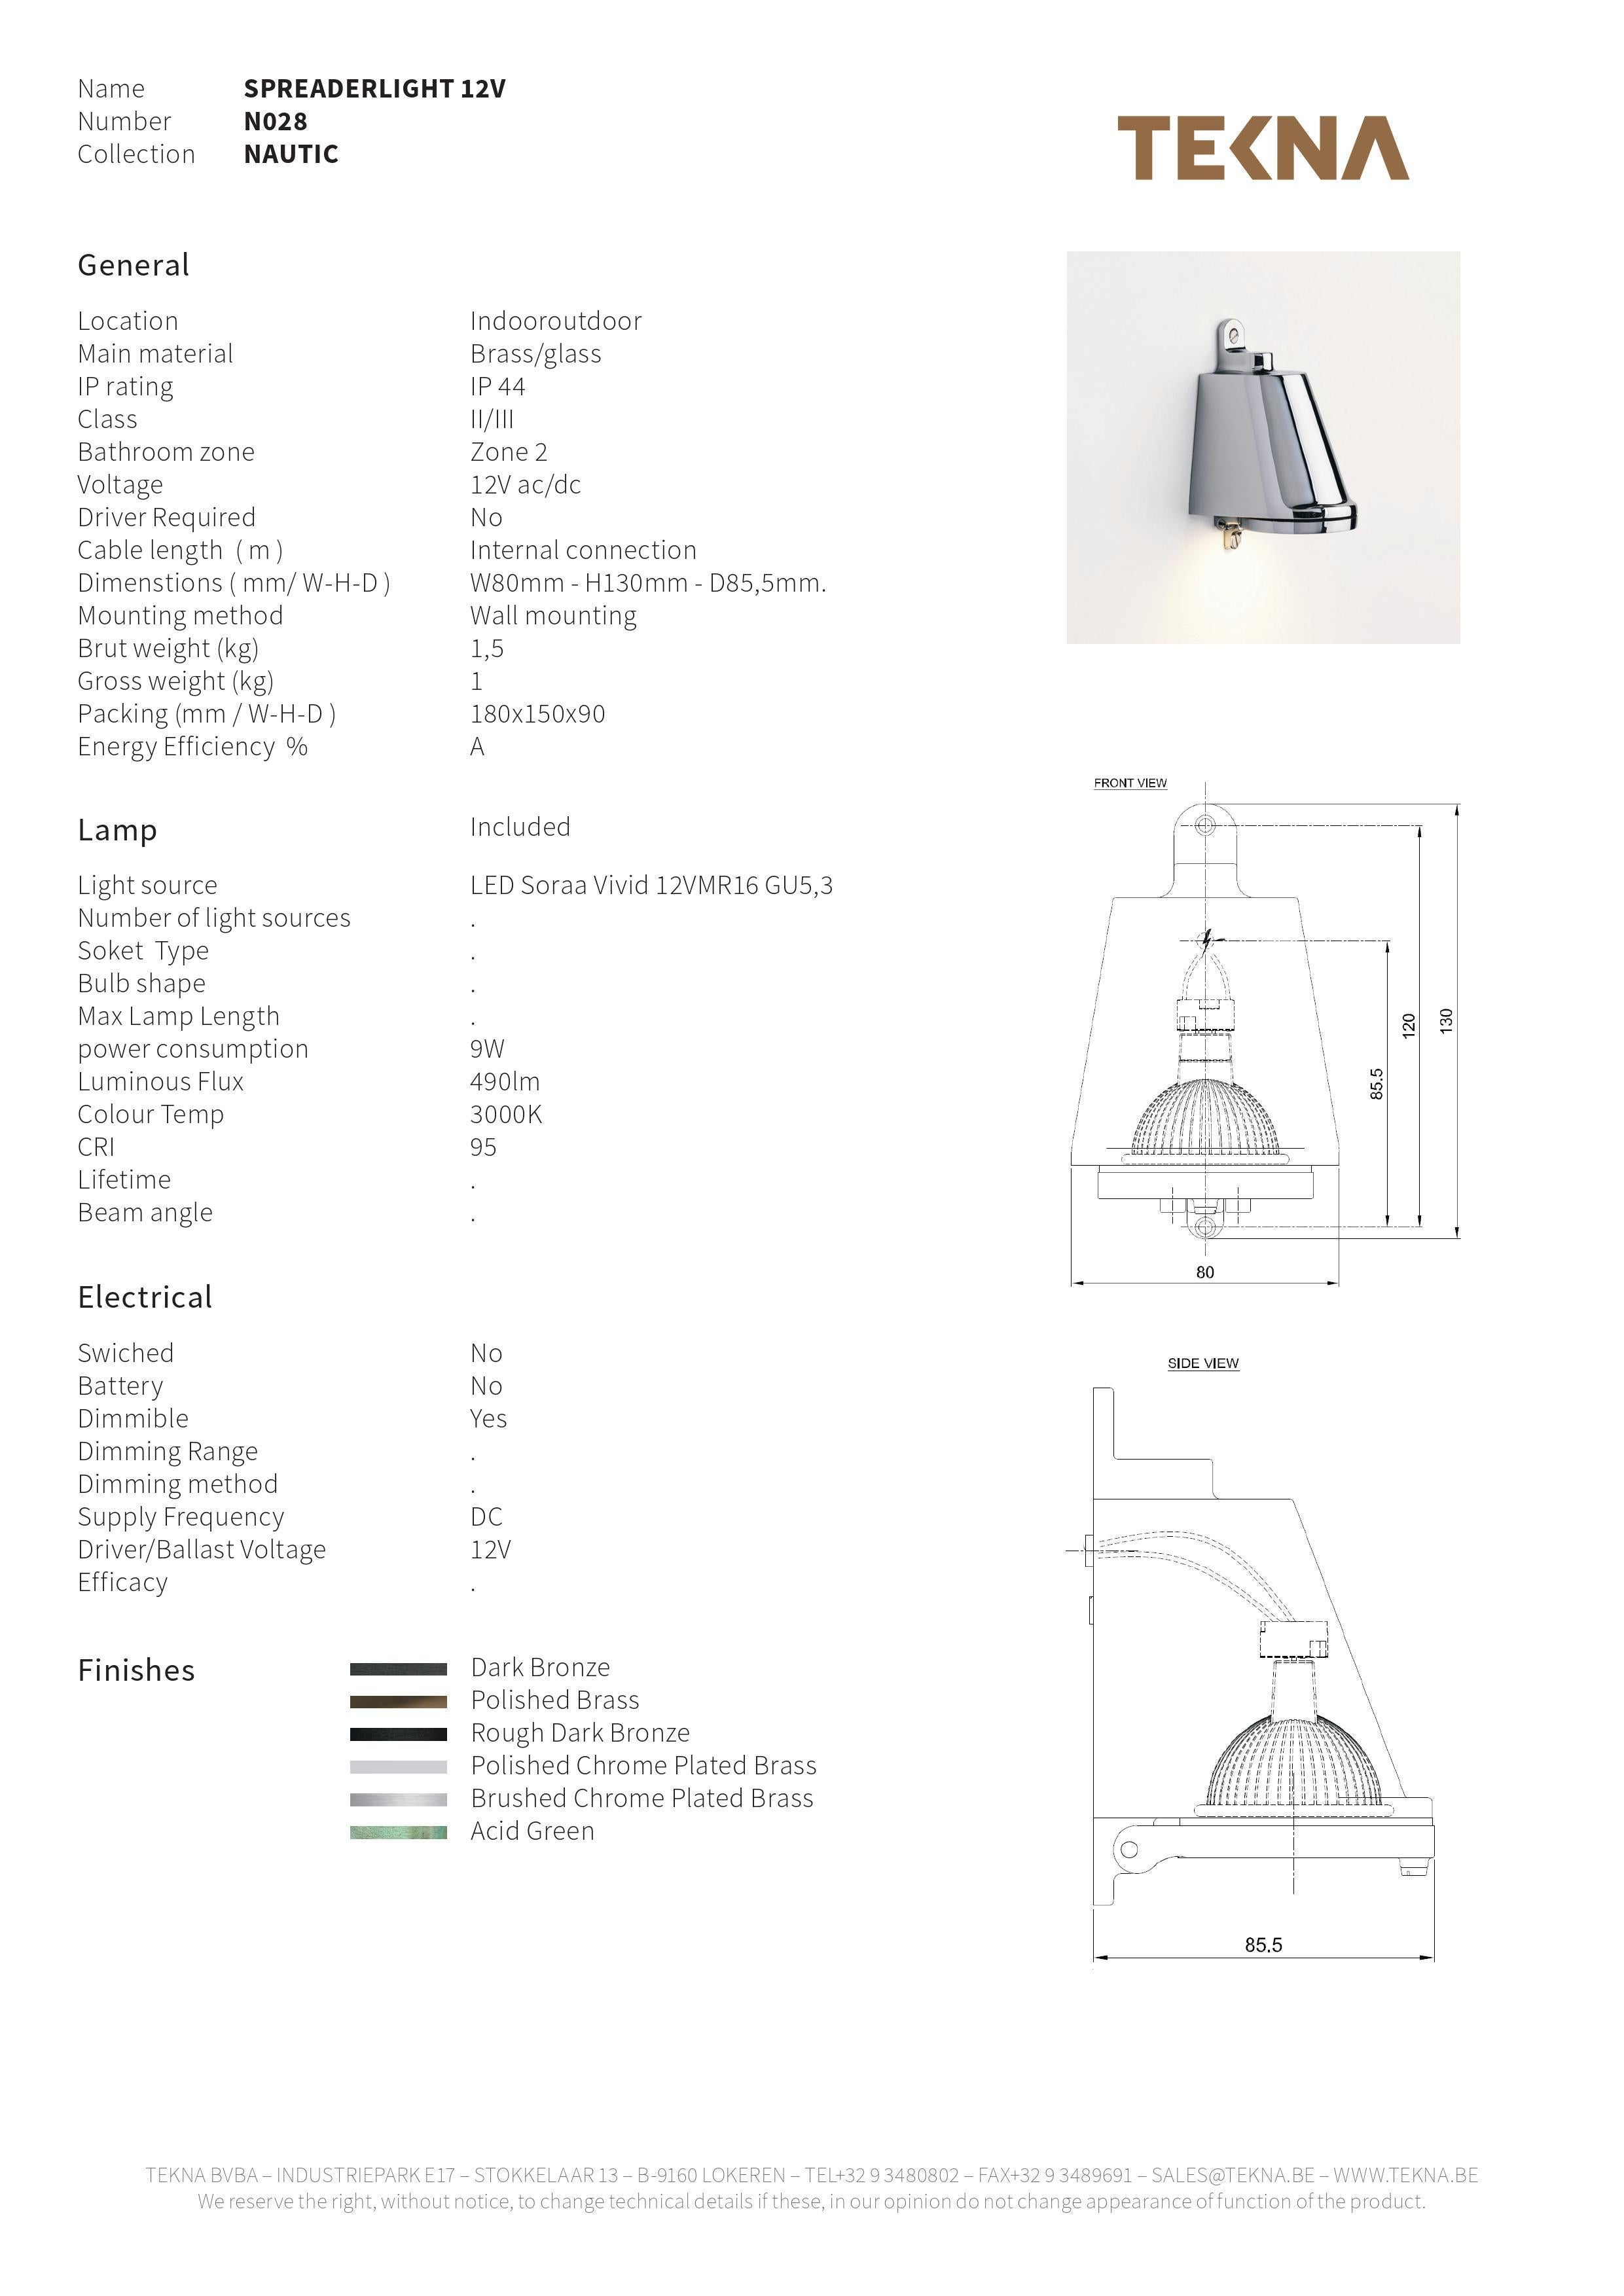 Belgian Spreaderlight 12V LED Wall Light with Dark Bronze Finish Tekna For Sale